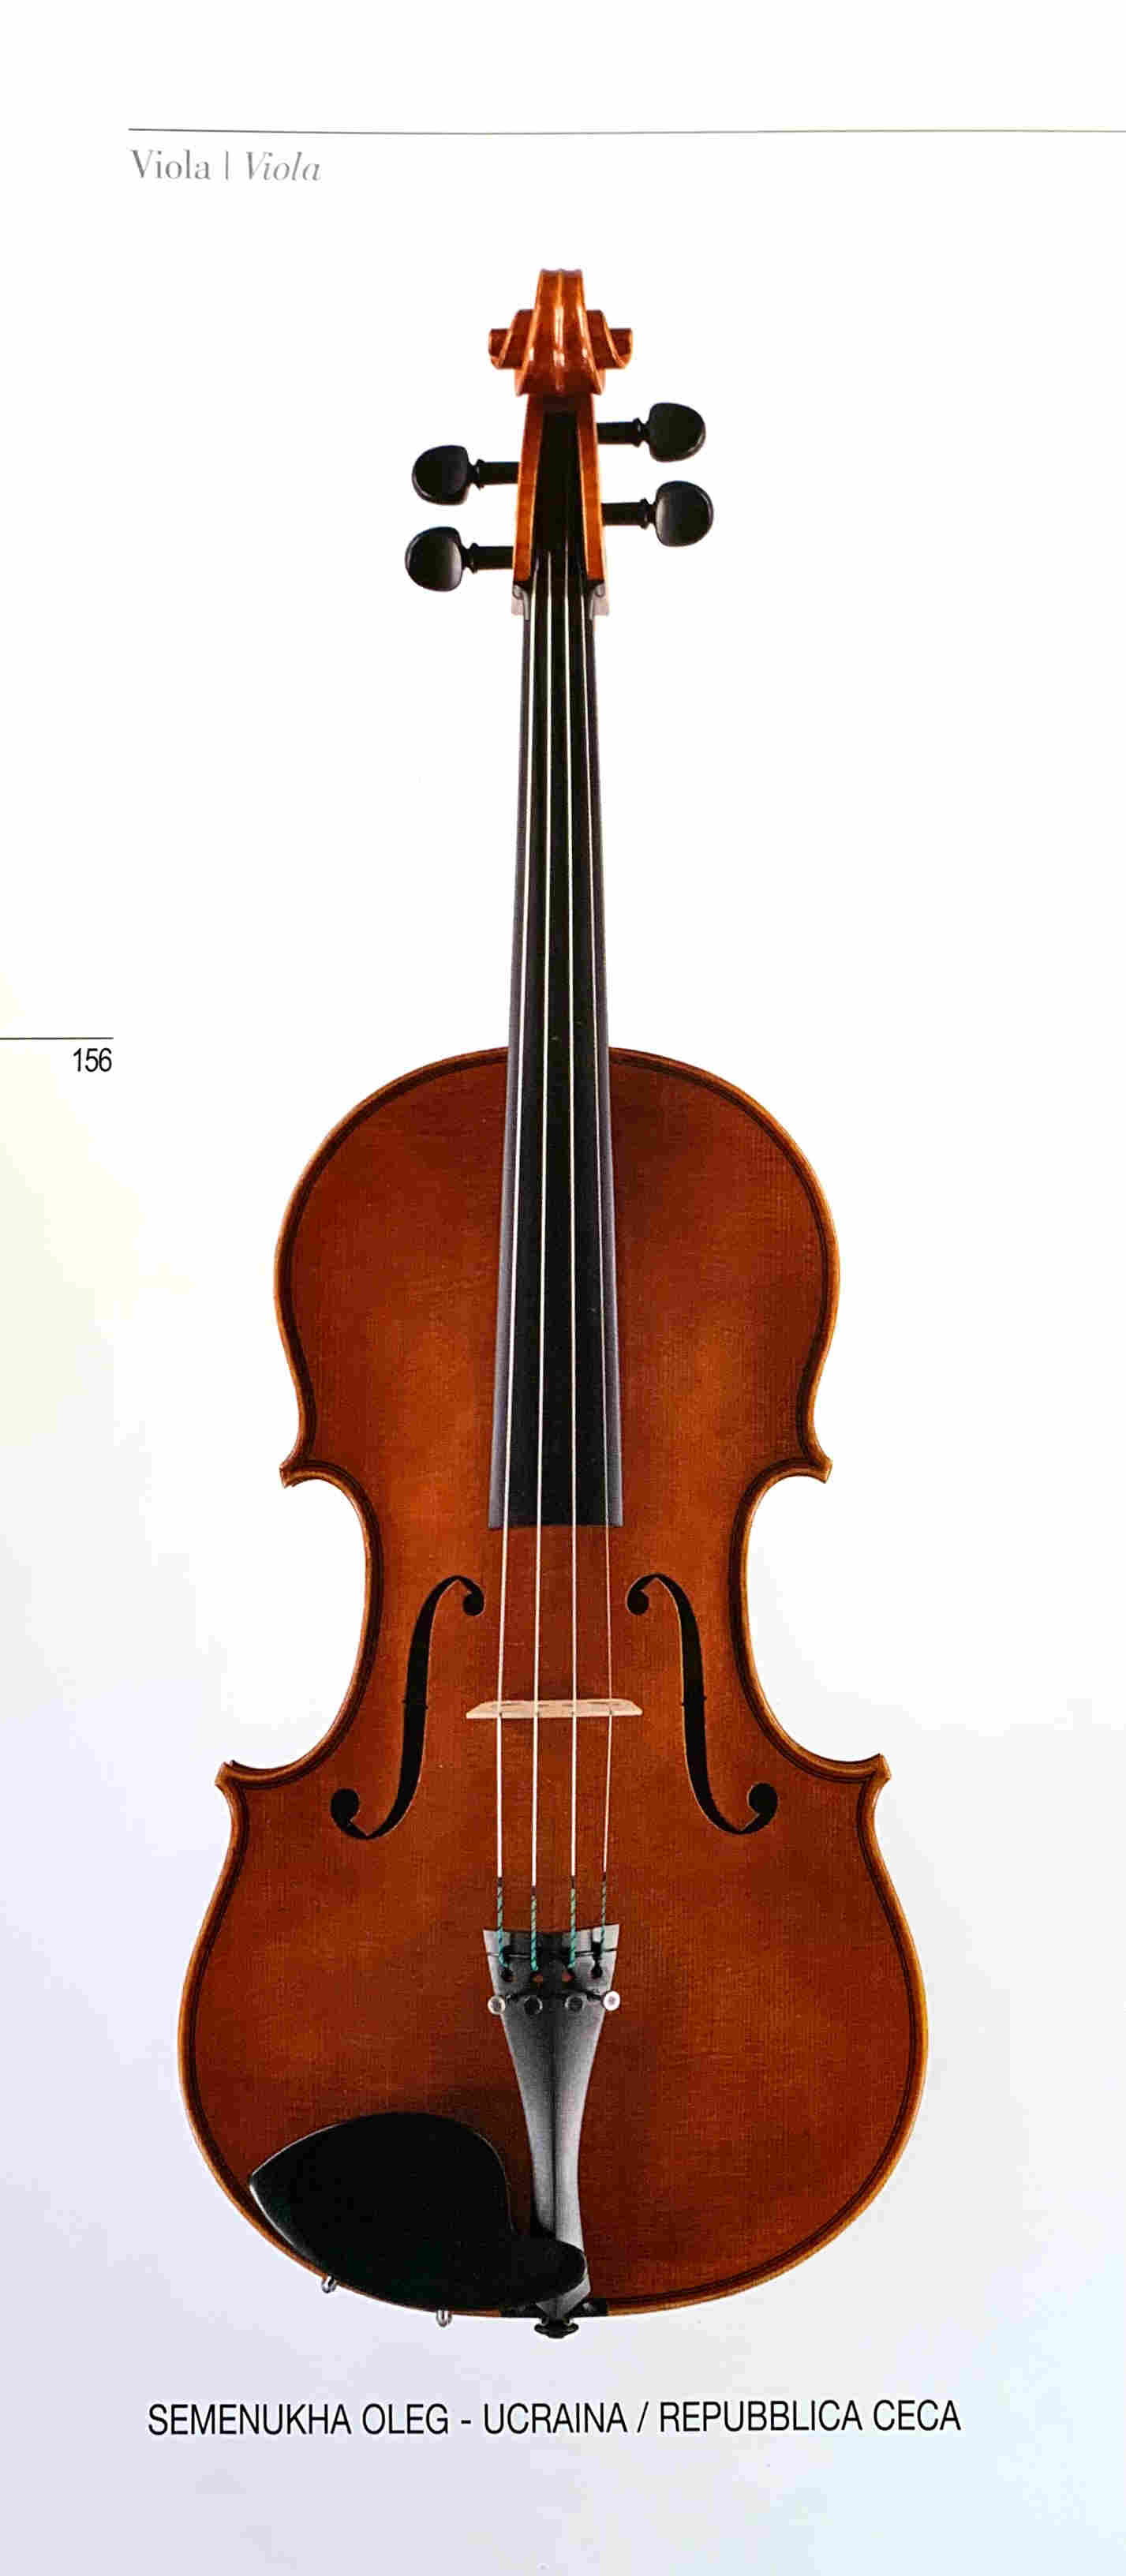 XV Concorso Triennale Internazionale di Liuteria Antonio Stradivari